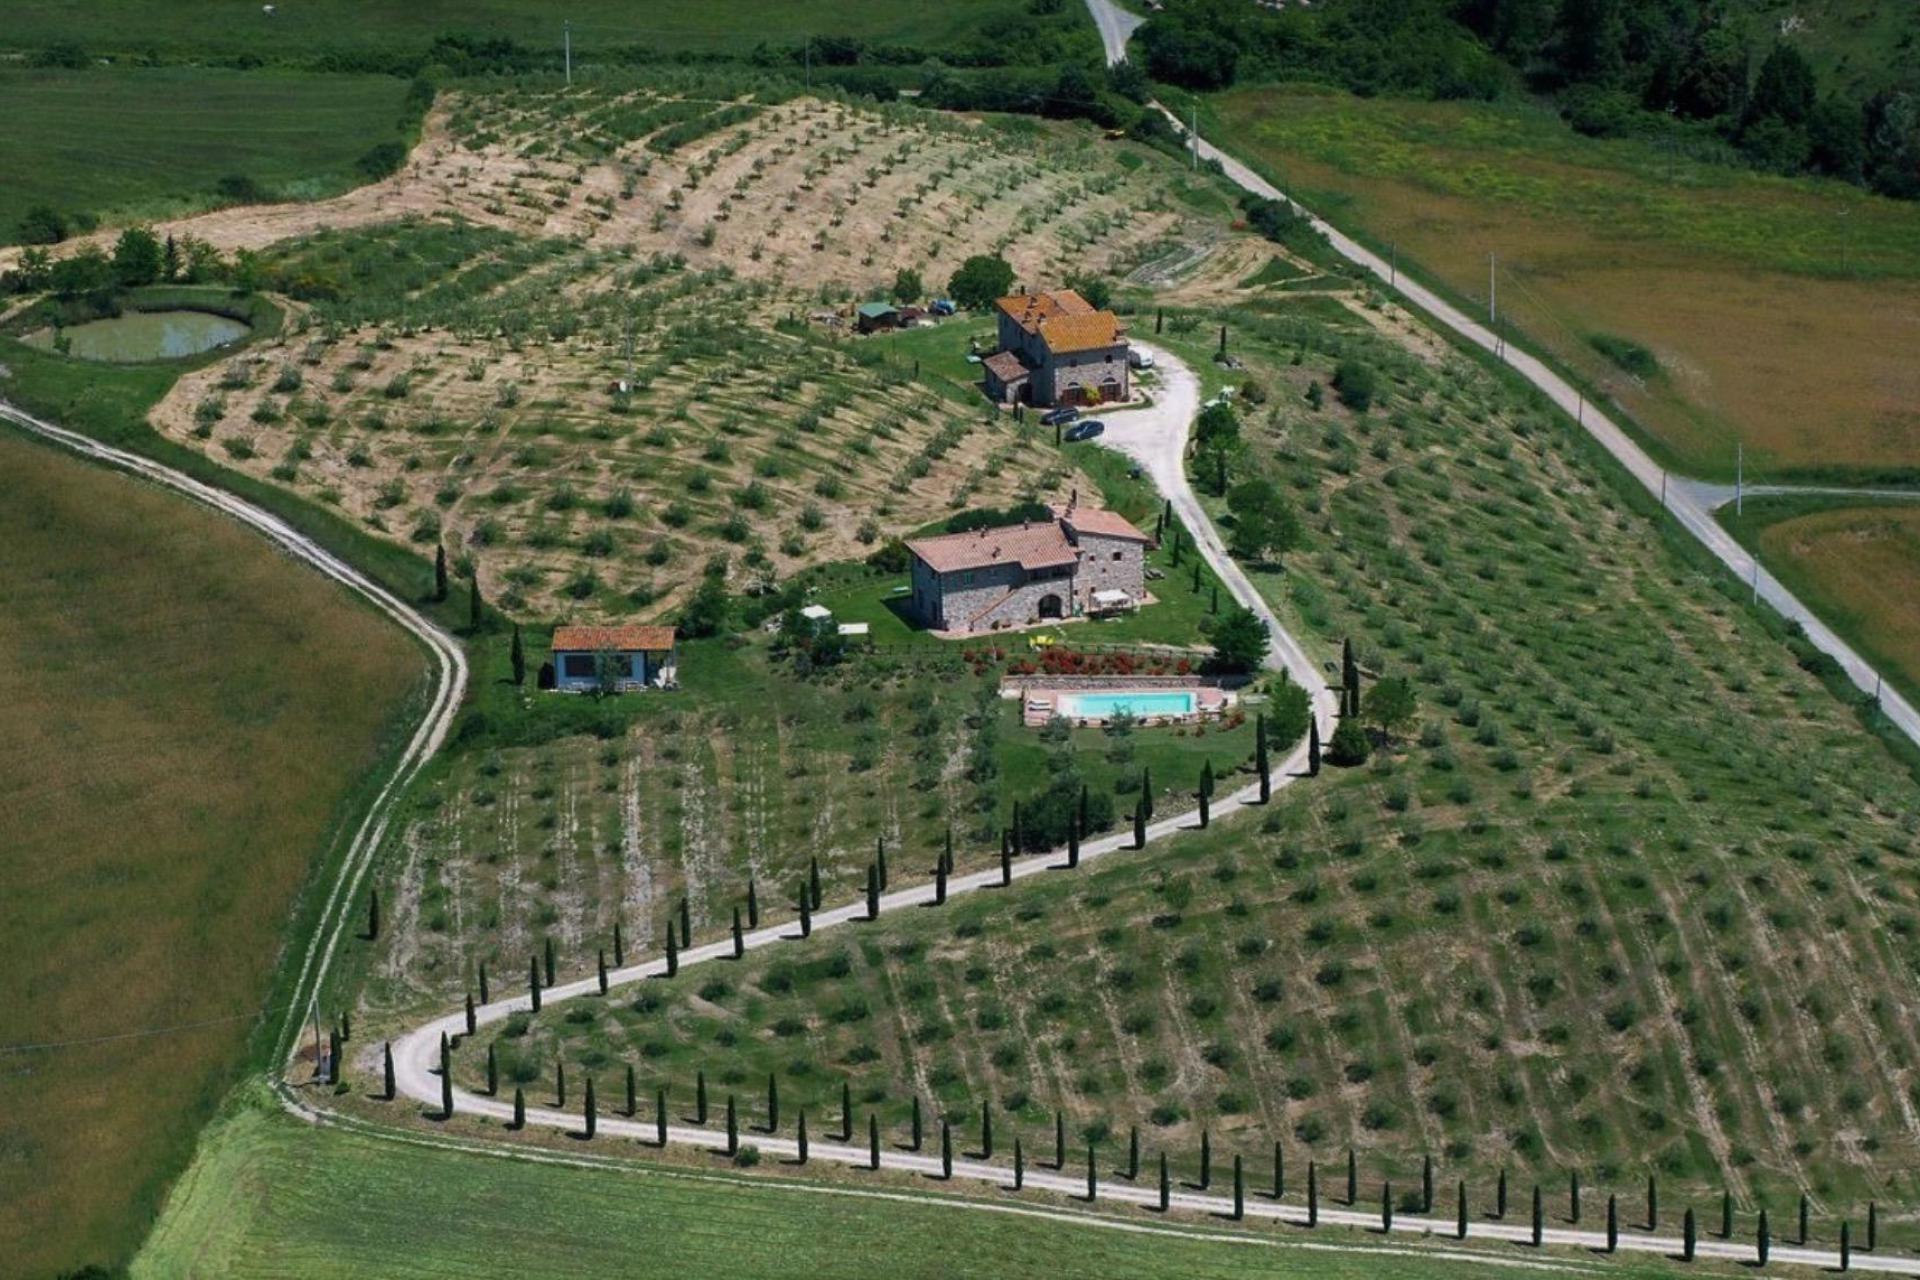 Agriturismo Toskana Gemütlicher Agriturismo mit schönem Pool in der Nähe von Volterra | myitalyselection.de